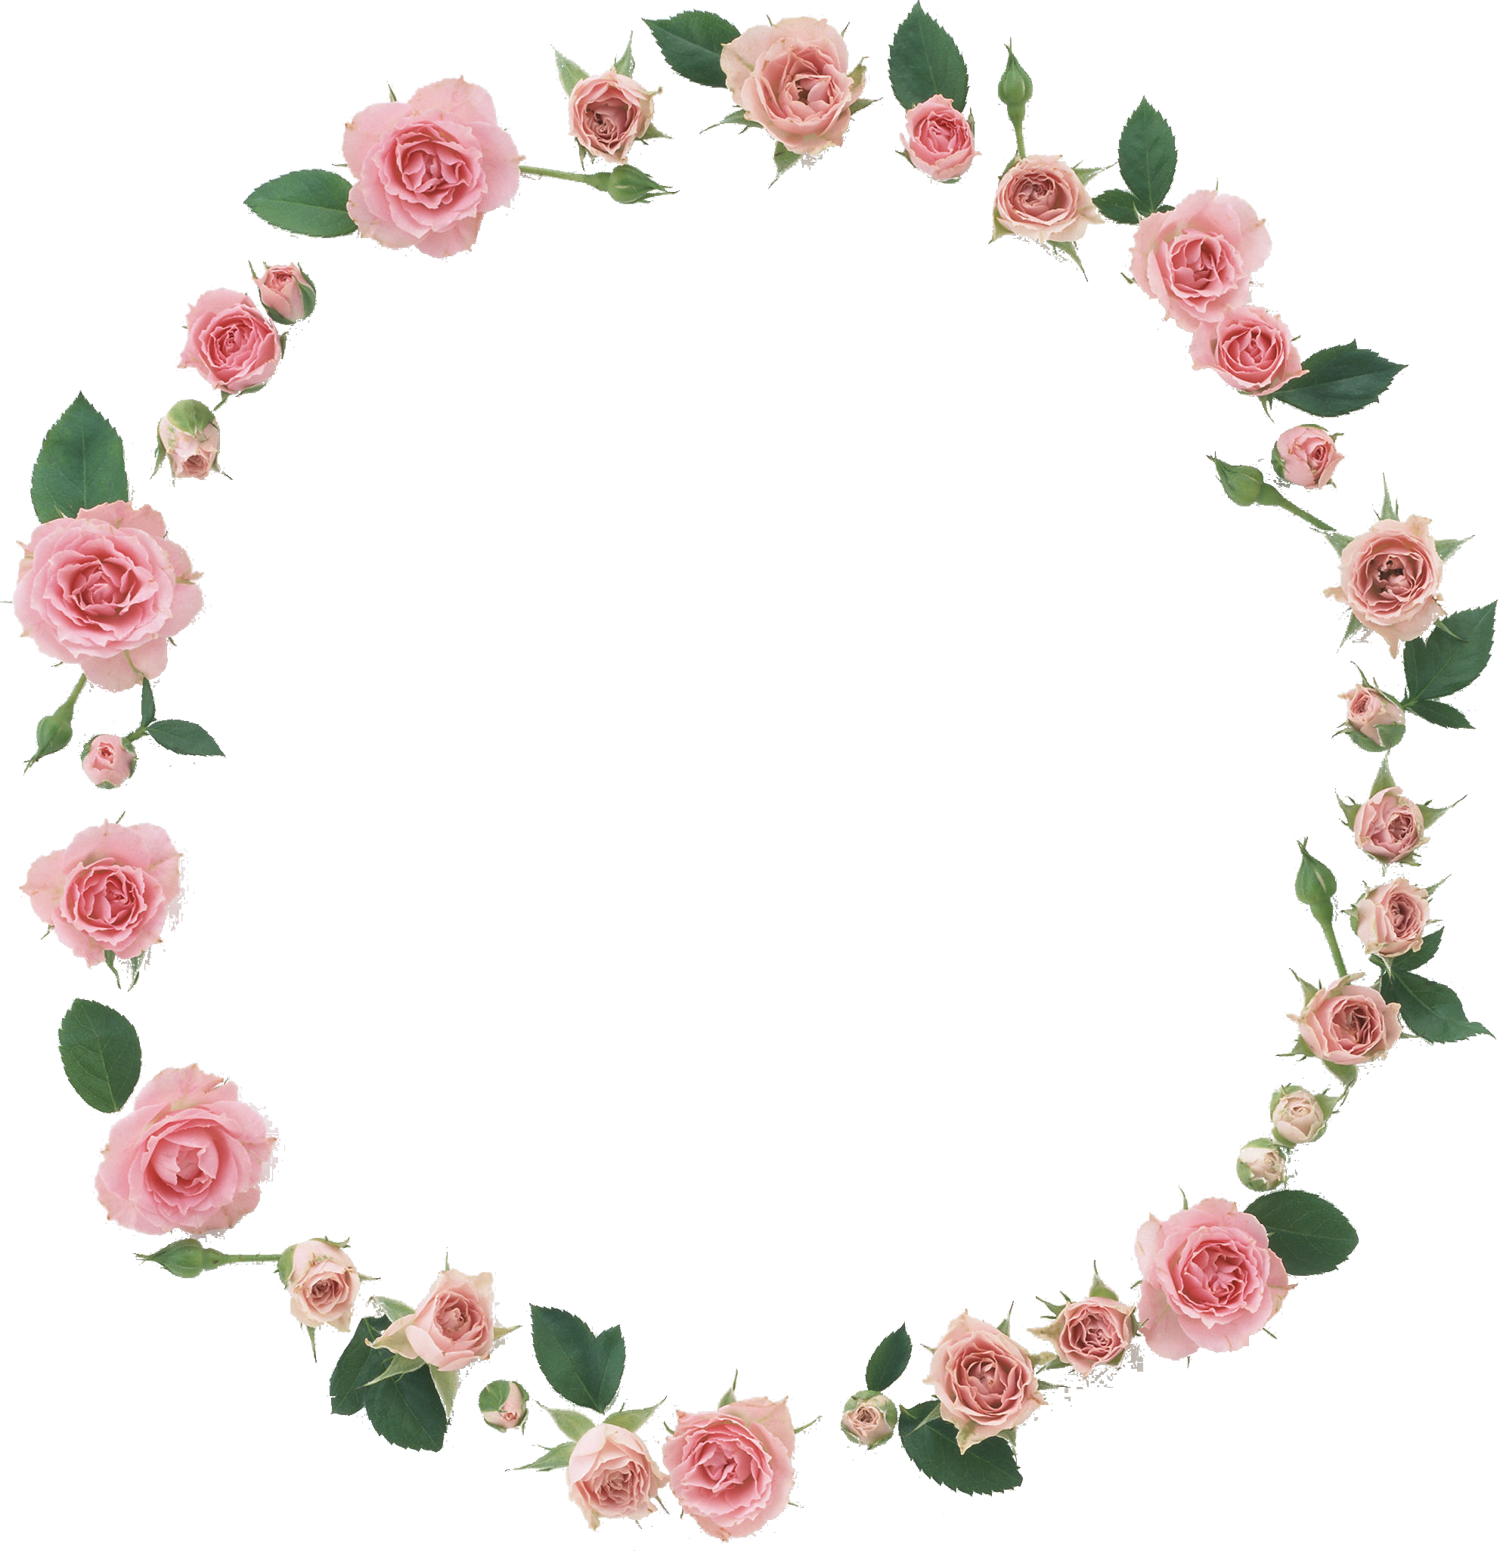 バラの写真 画像 フリー素材 No 1091 ピンクのバラ 葉 輪